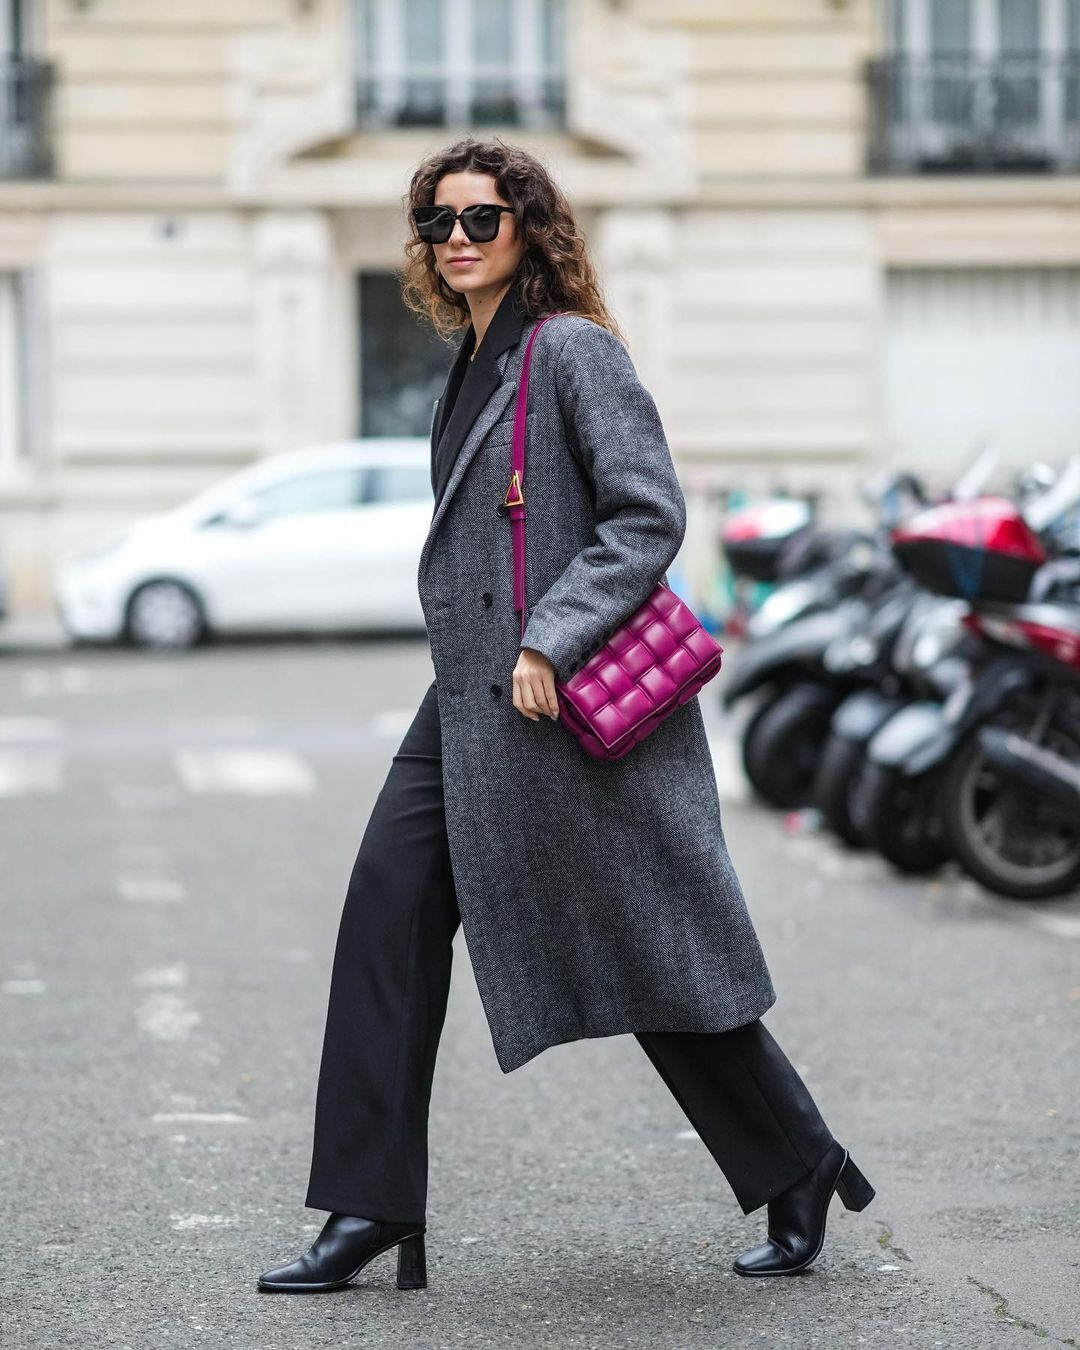 Яркая сумочка стала акцентной для образа с классическим серым пальто и брюками